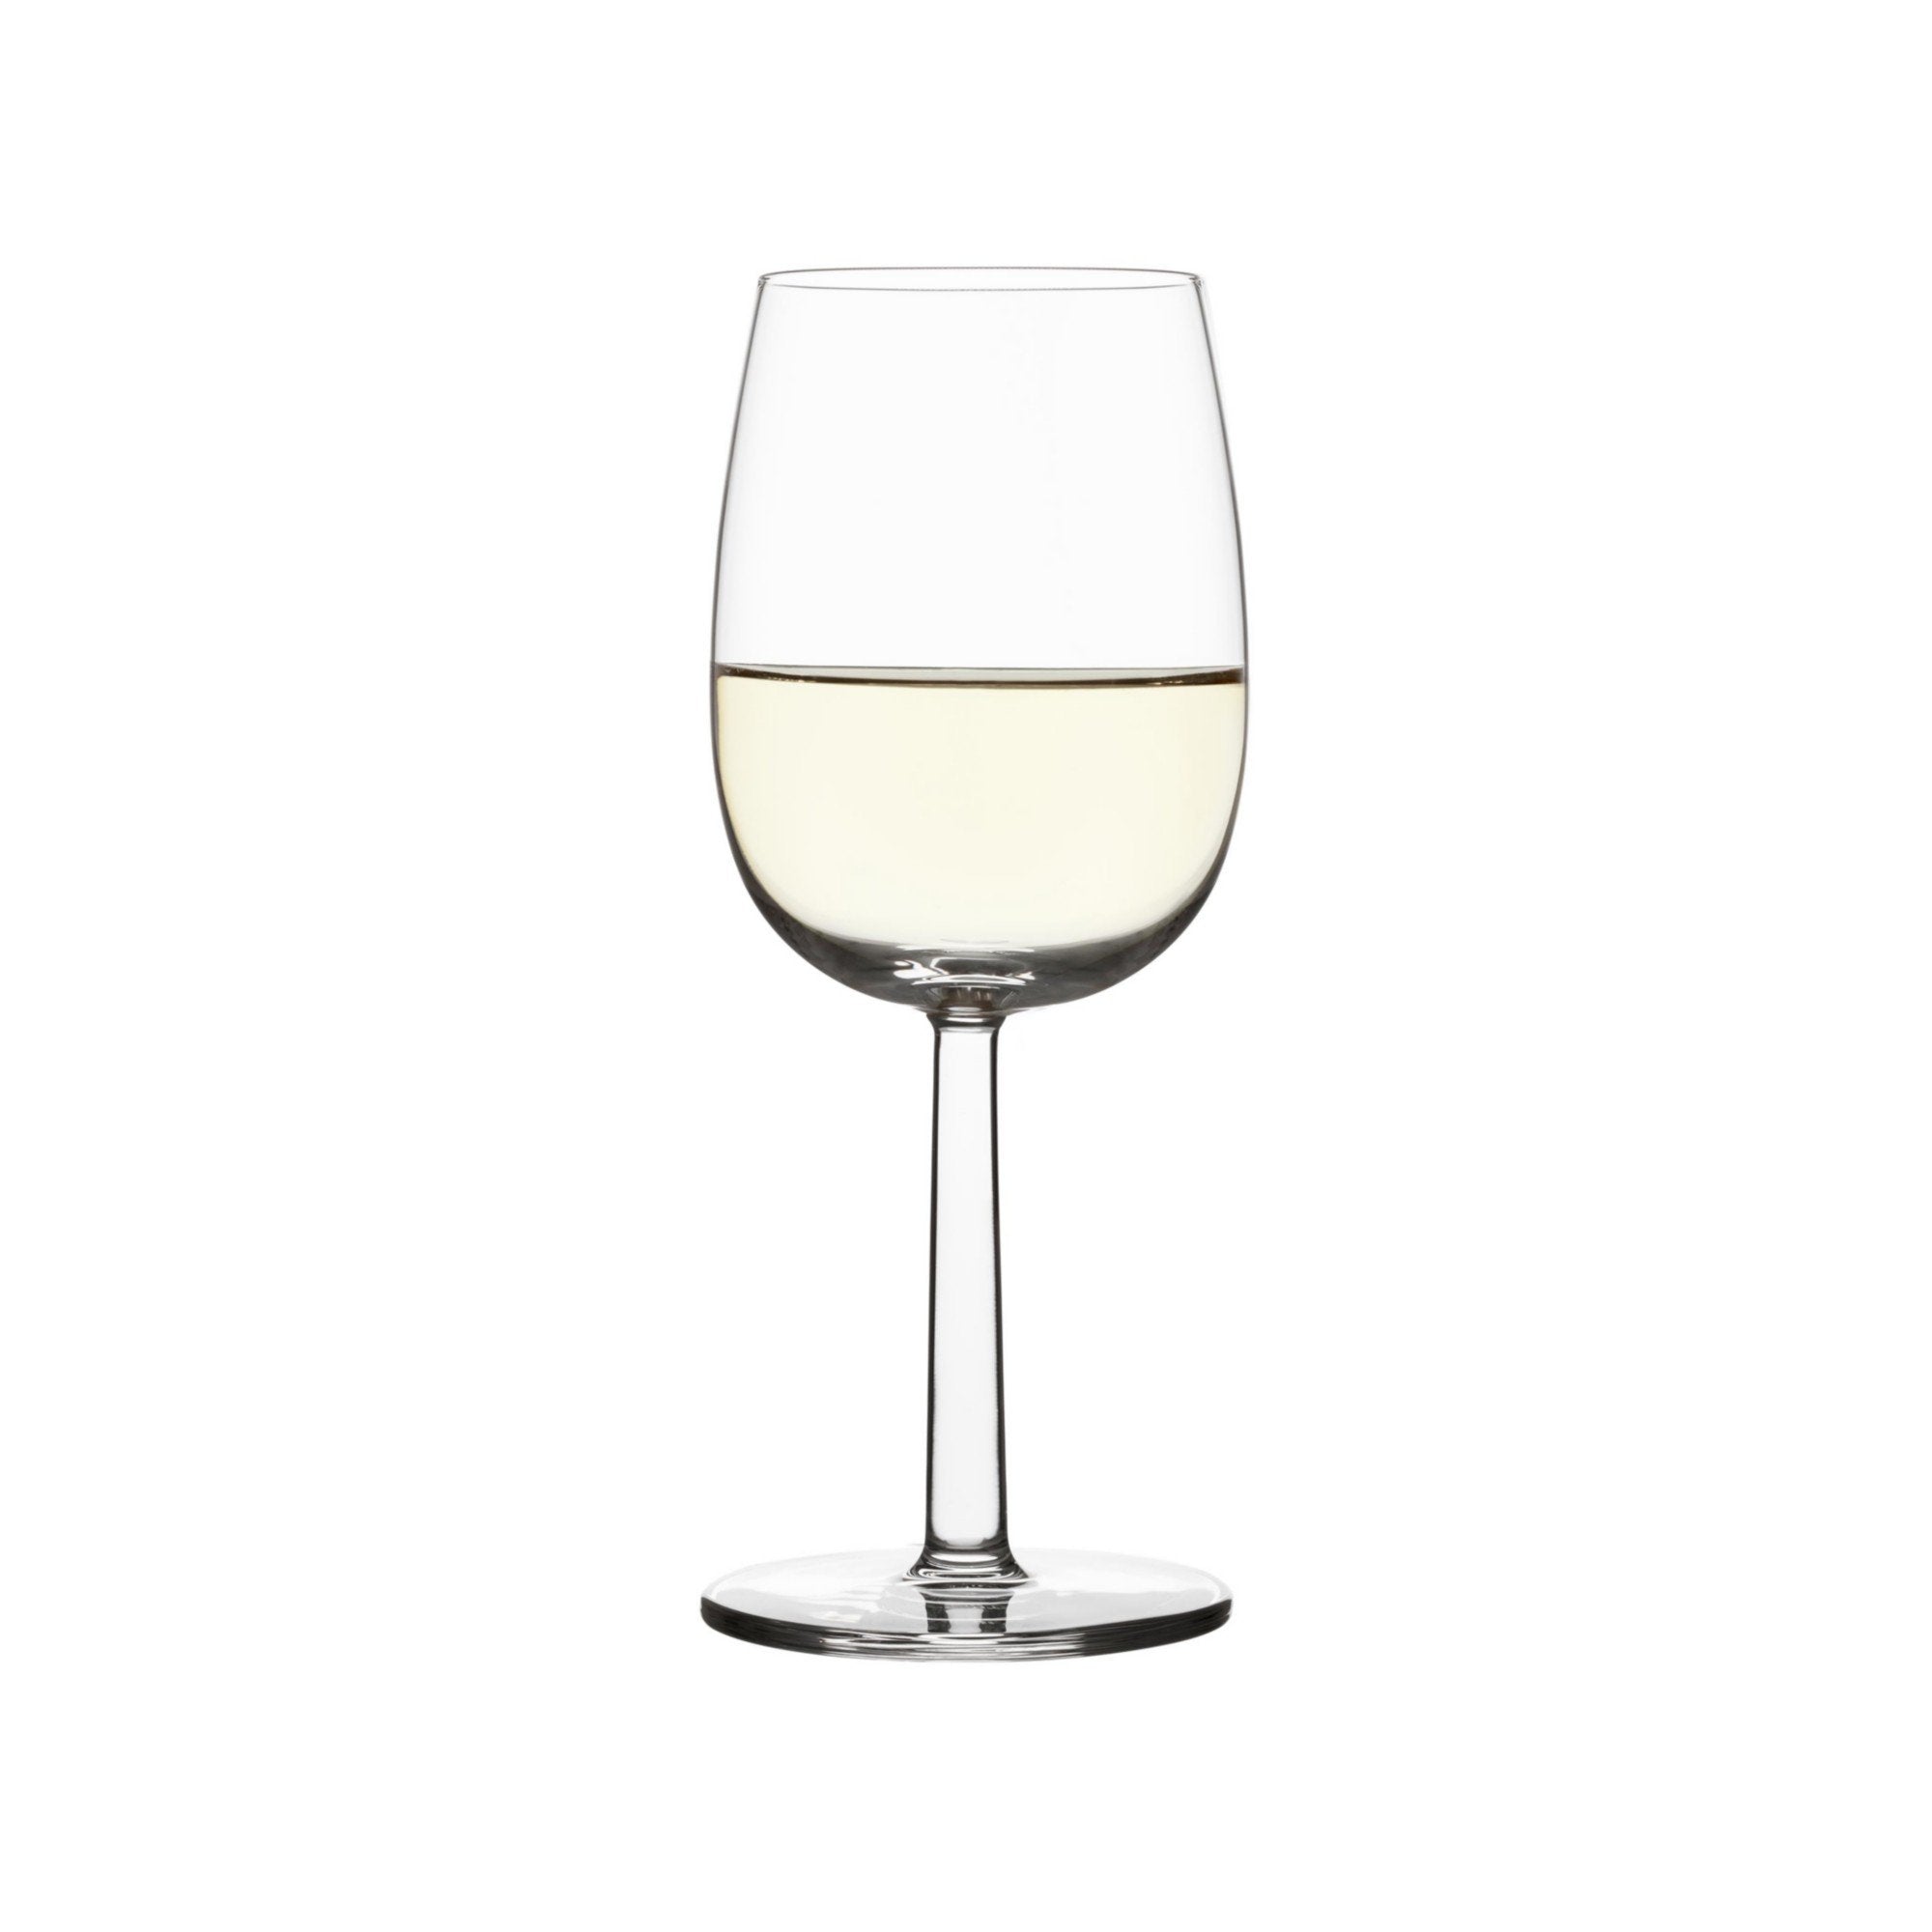 Iittala Raami witte wijnglazen Clear 2pcs, 28cl